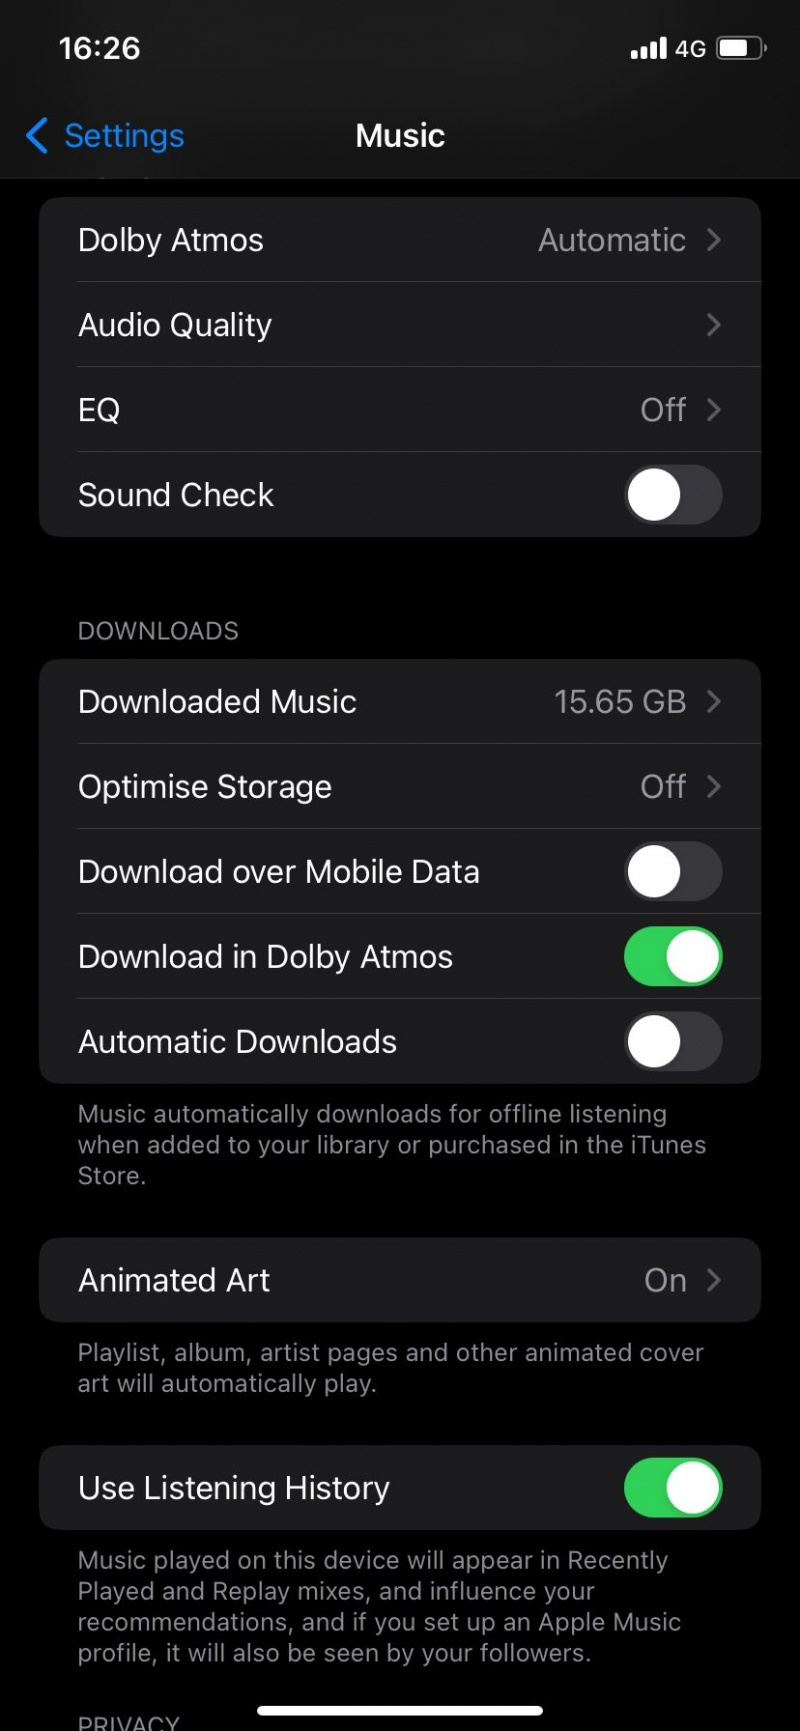   تم تعطيل التنزيل عبر بيانات الجوال على Apple Music